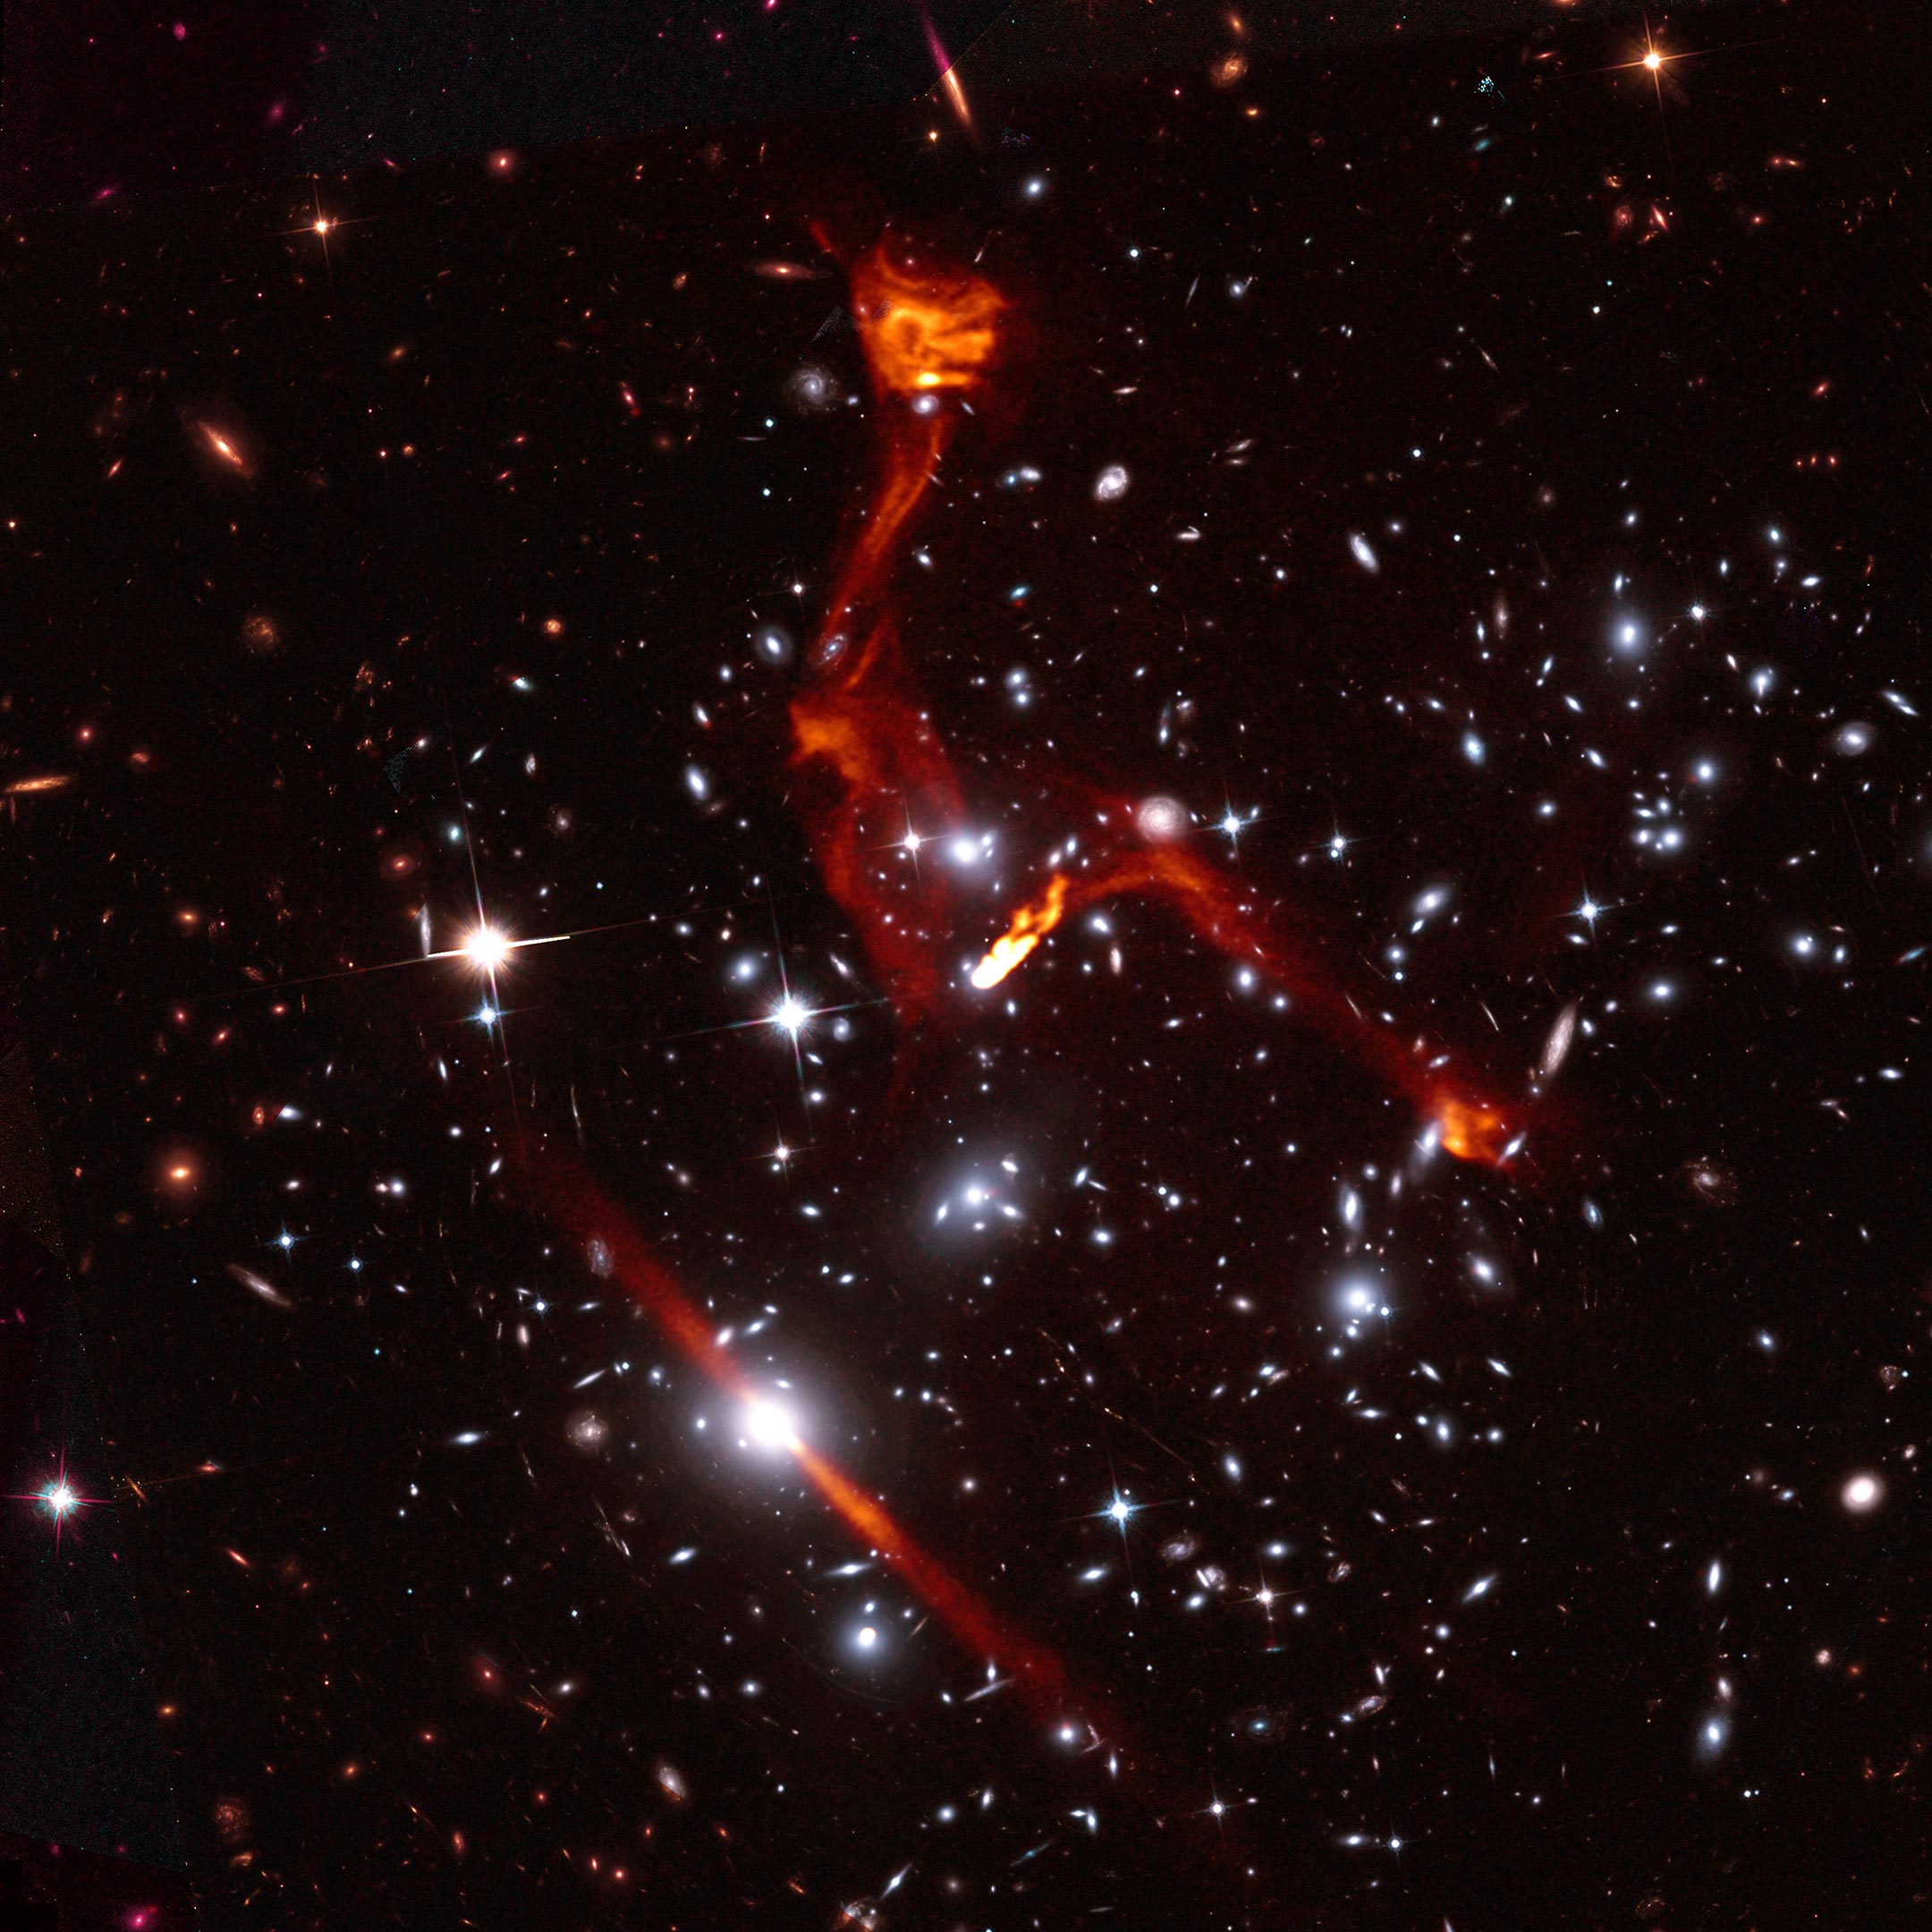 4 5 световых года. Радиогалактика лебедь а. Радиогалактика Центавр а (NGC 5128). Геркулес а Галактика. Радиогалактики и квазары.